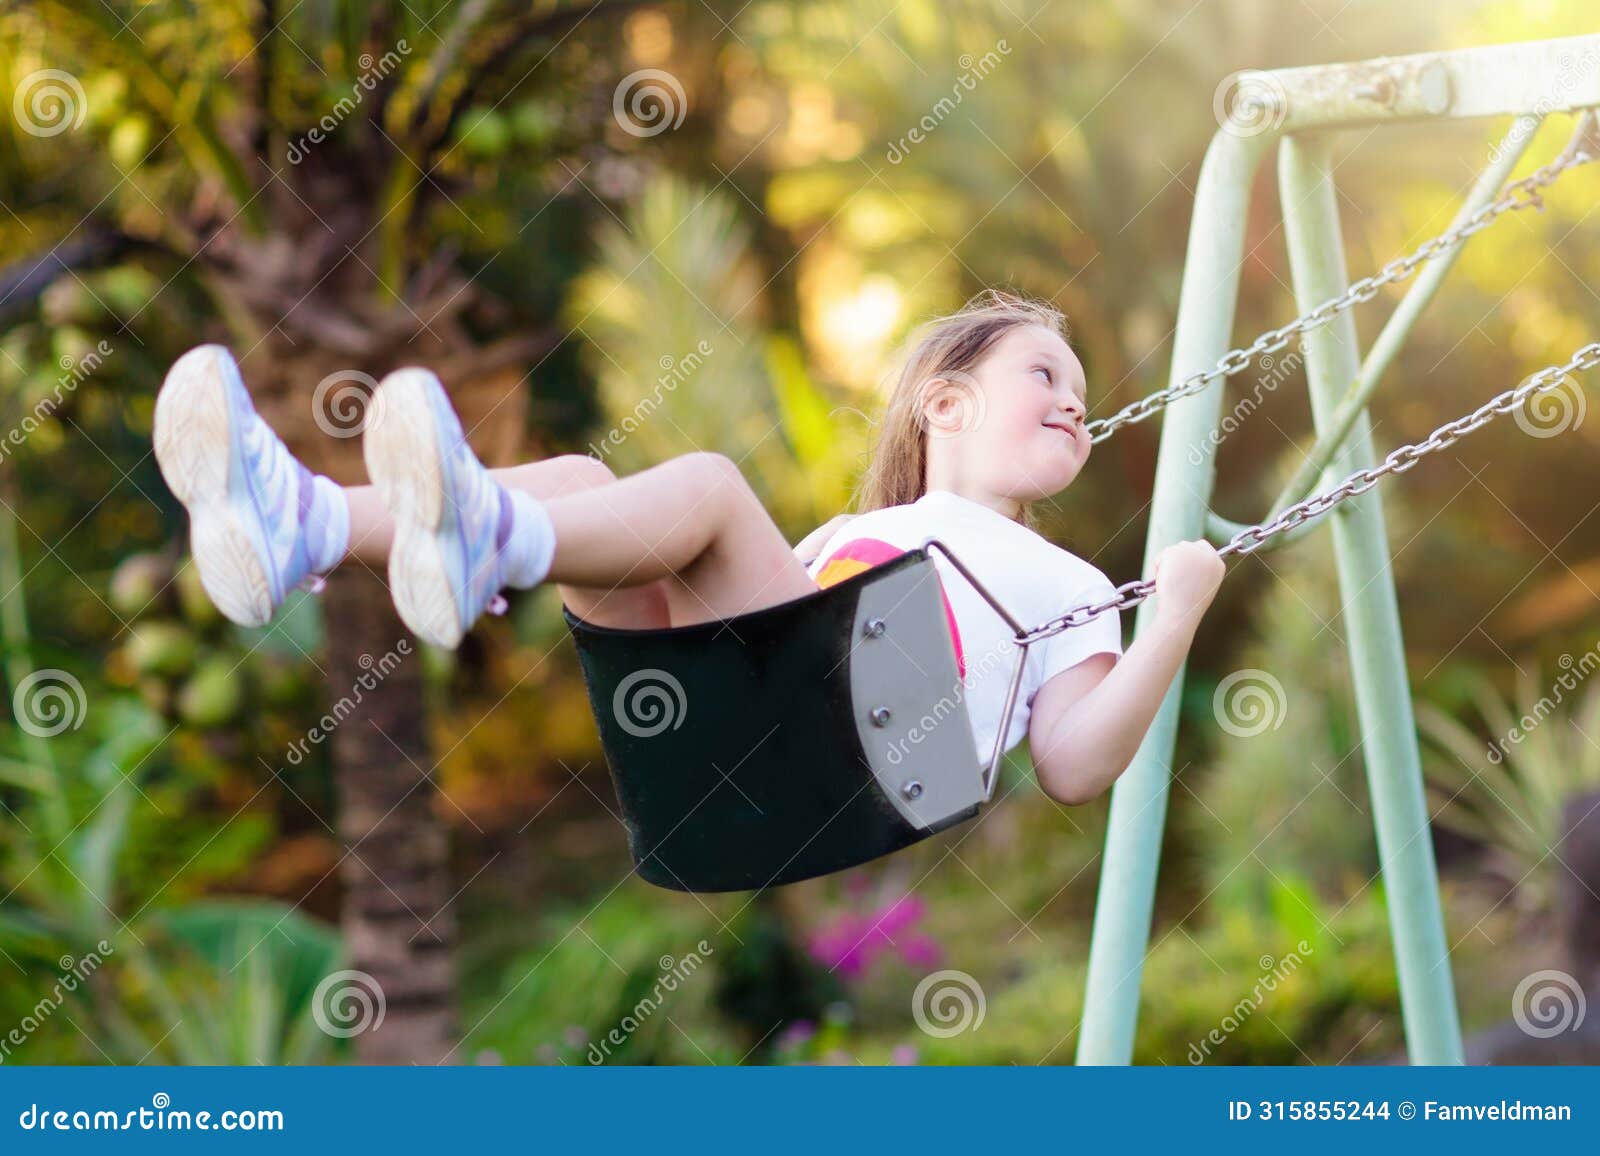 child swinging on playground. kids swing